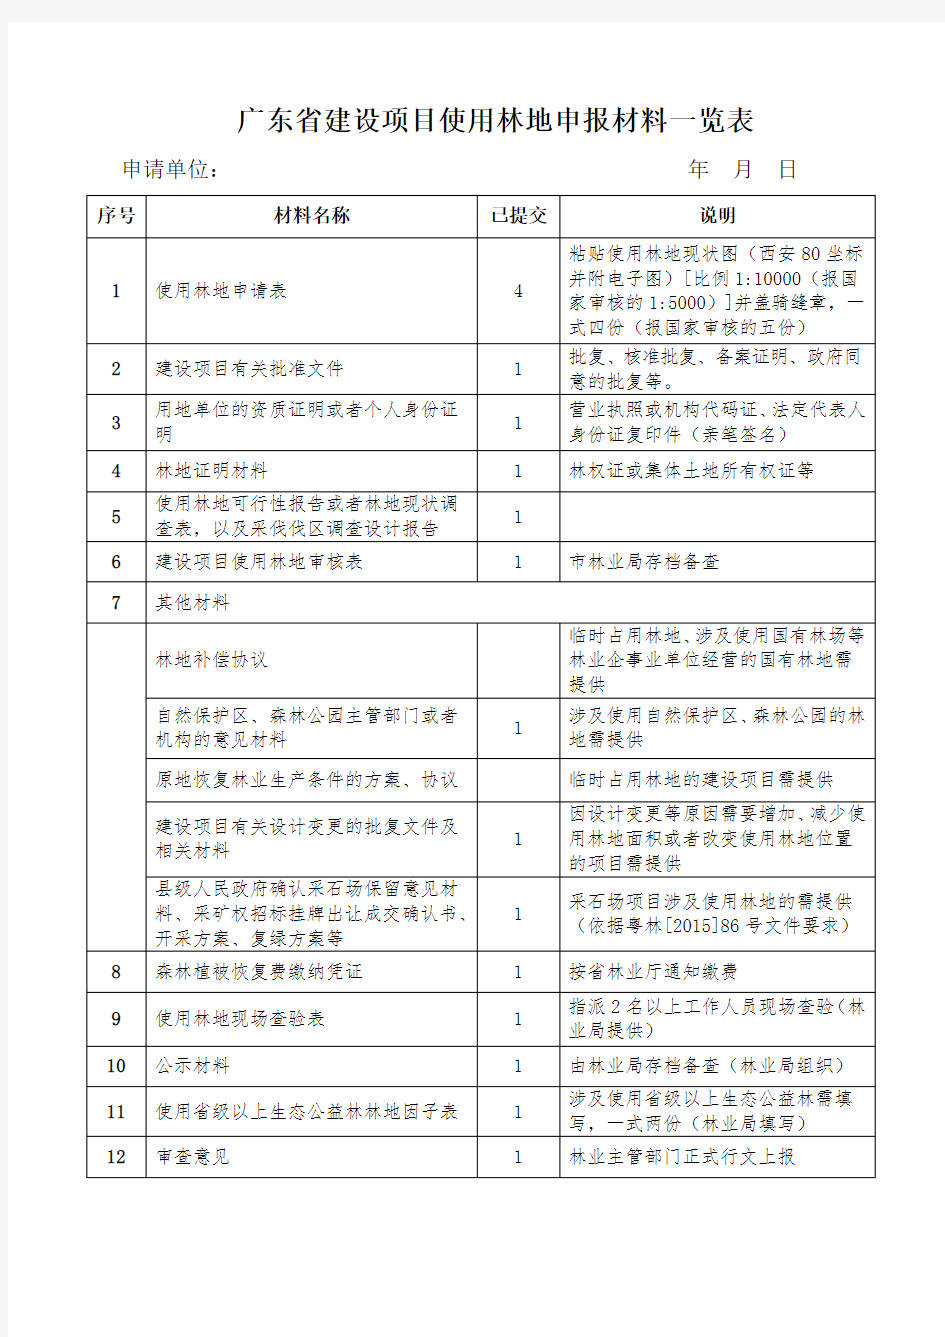 广东省建设项目使用林地申报材料一览表(原表)